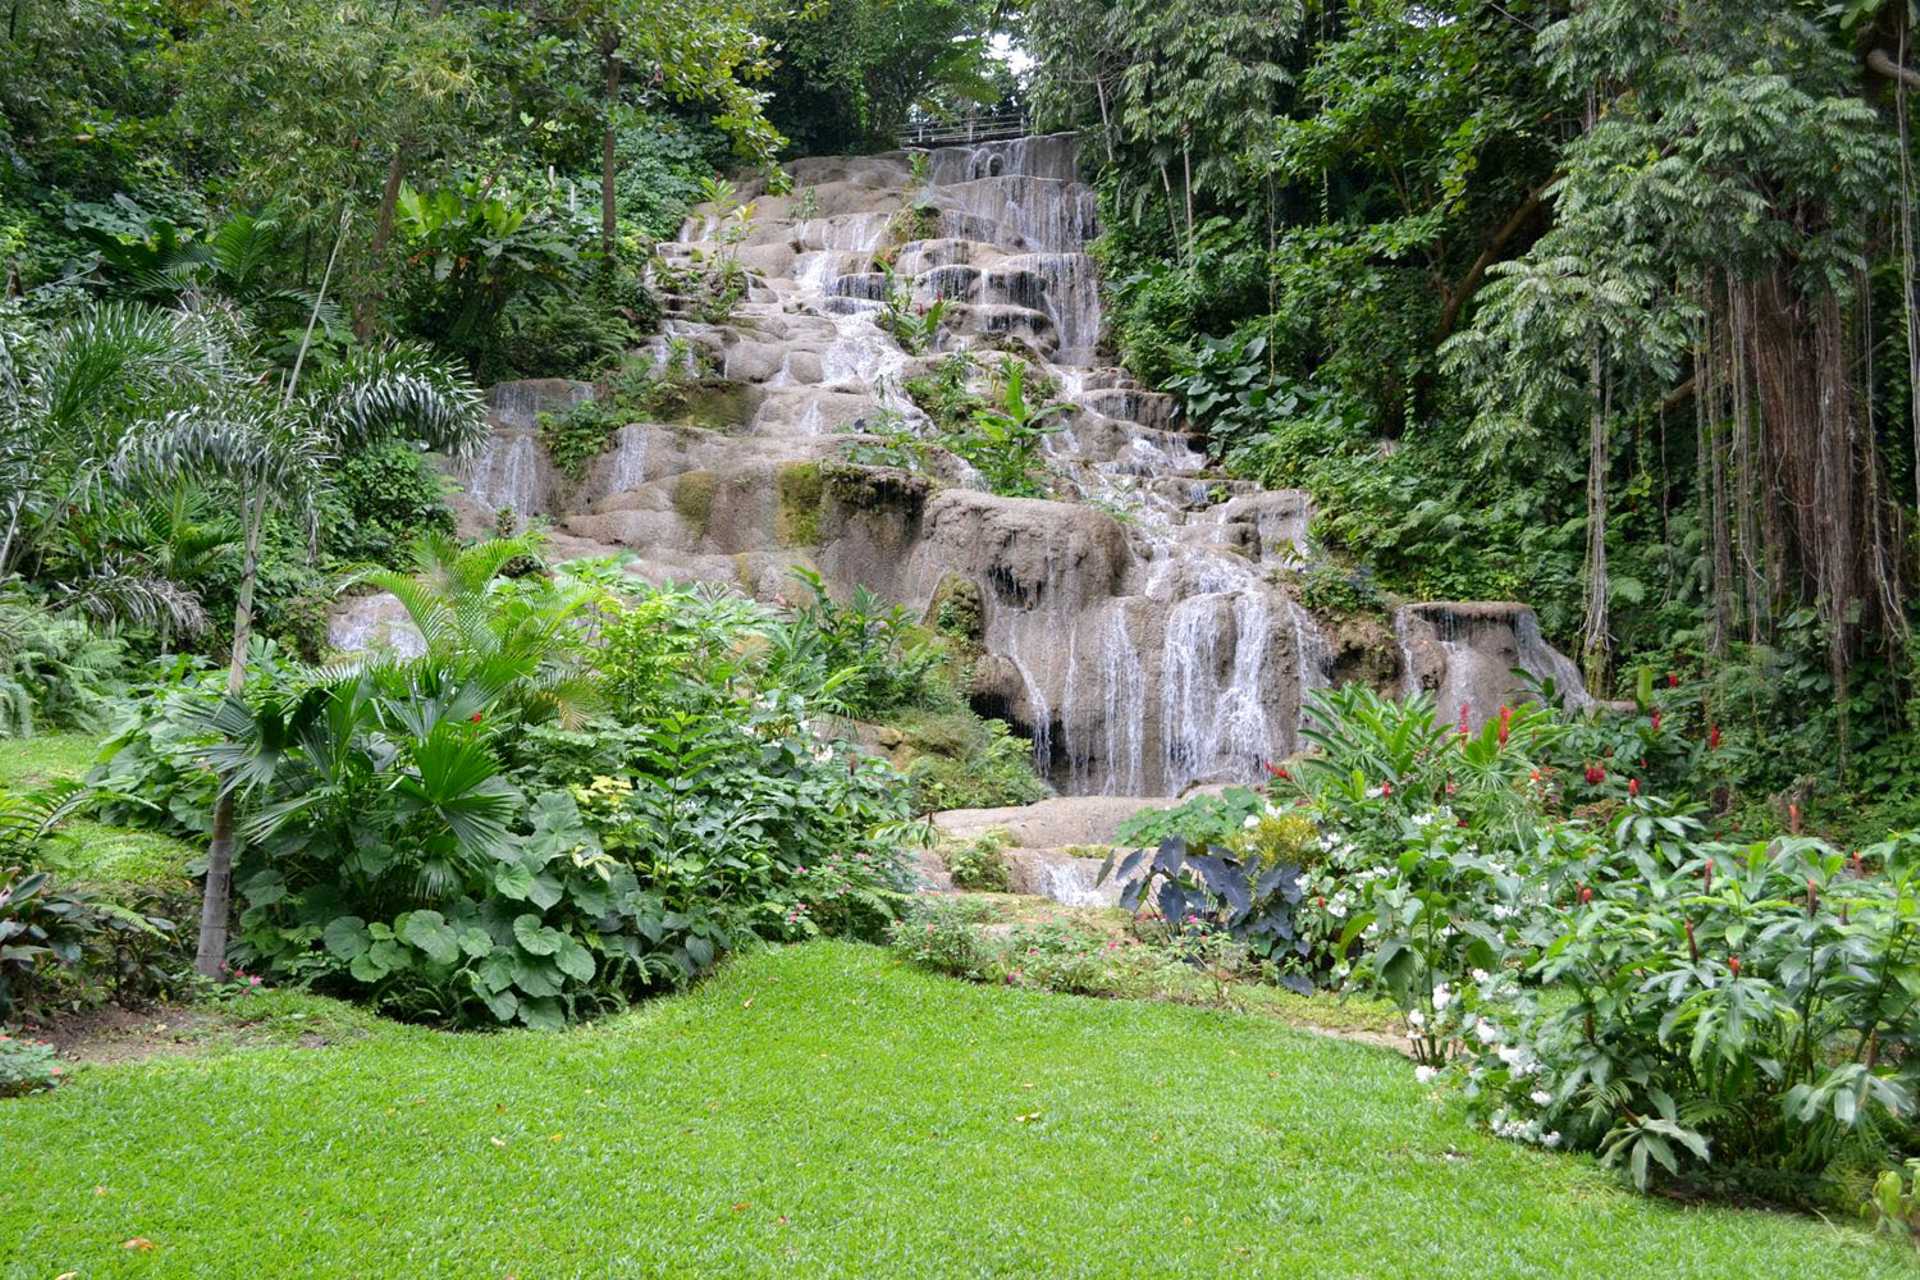 Konoko Falls and Garden Tour from Ocho Rios